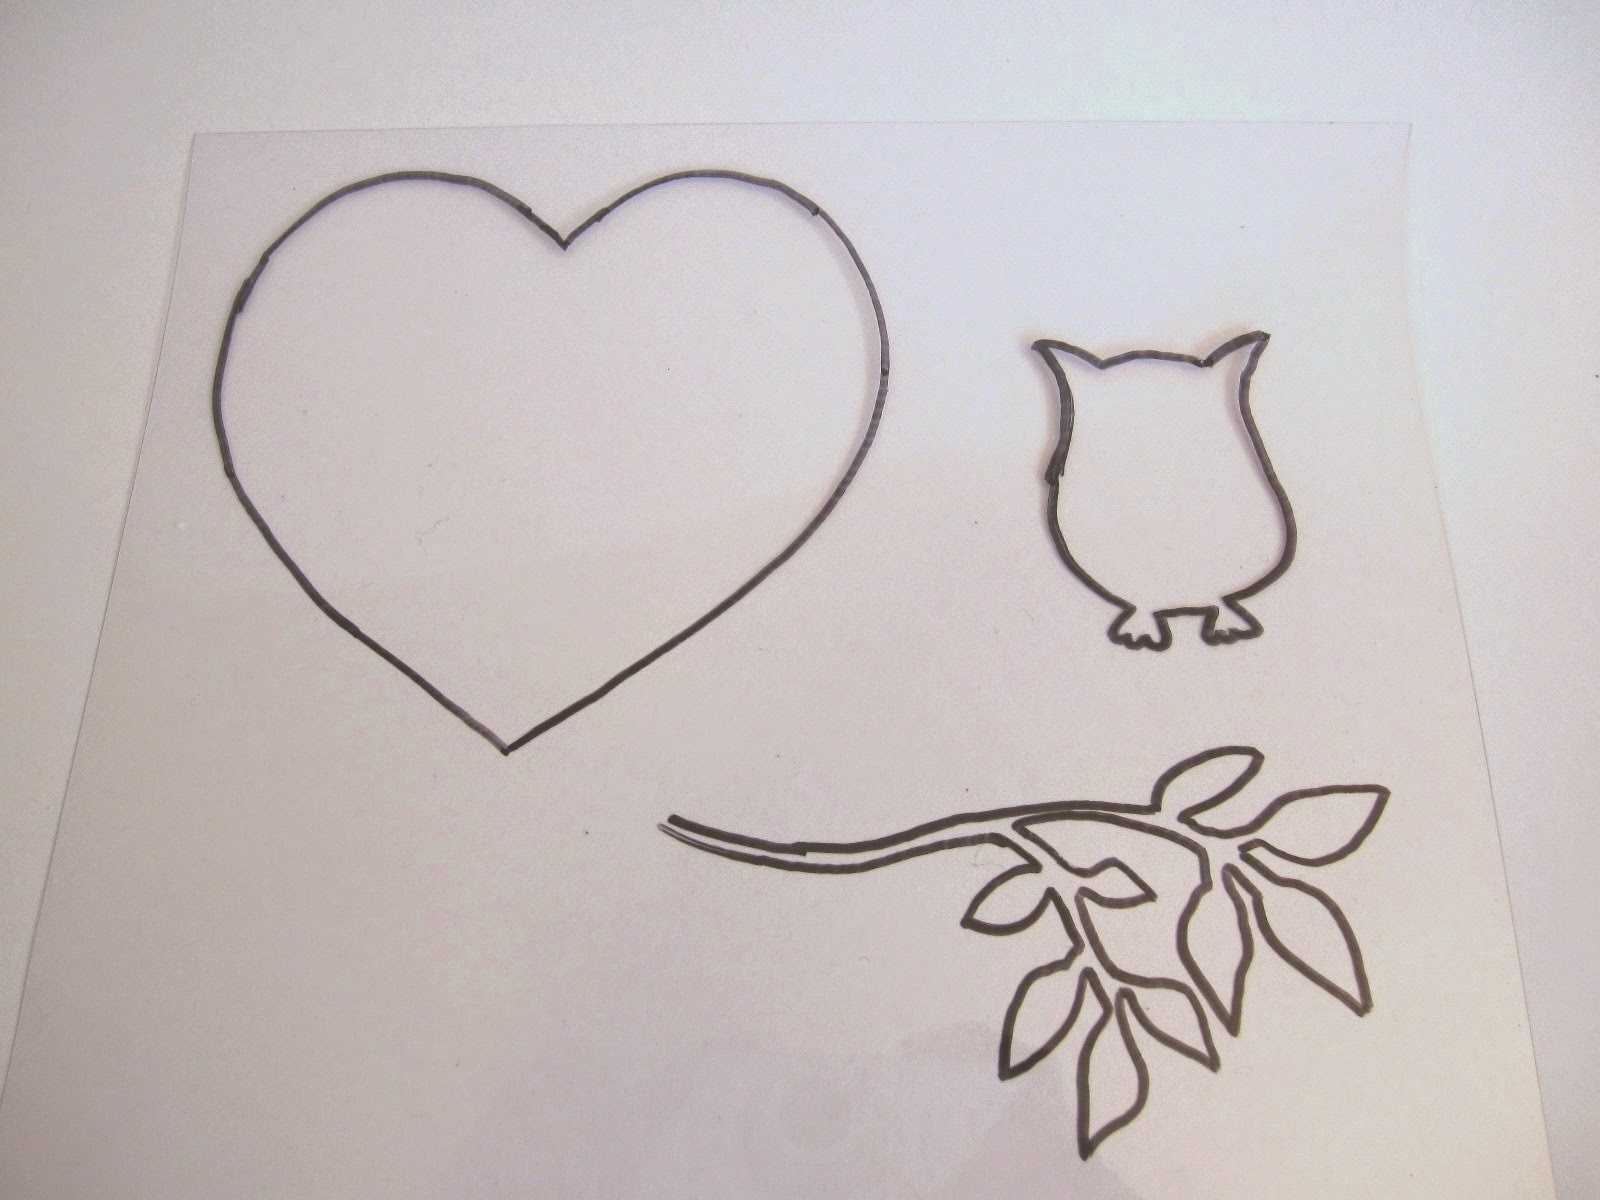 hoja de acetato transparente con dibujo de corazón, búho y rama